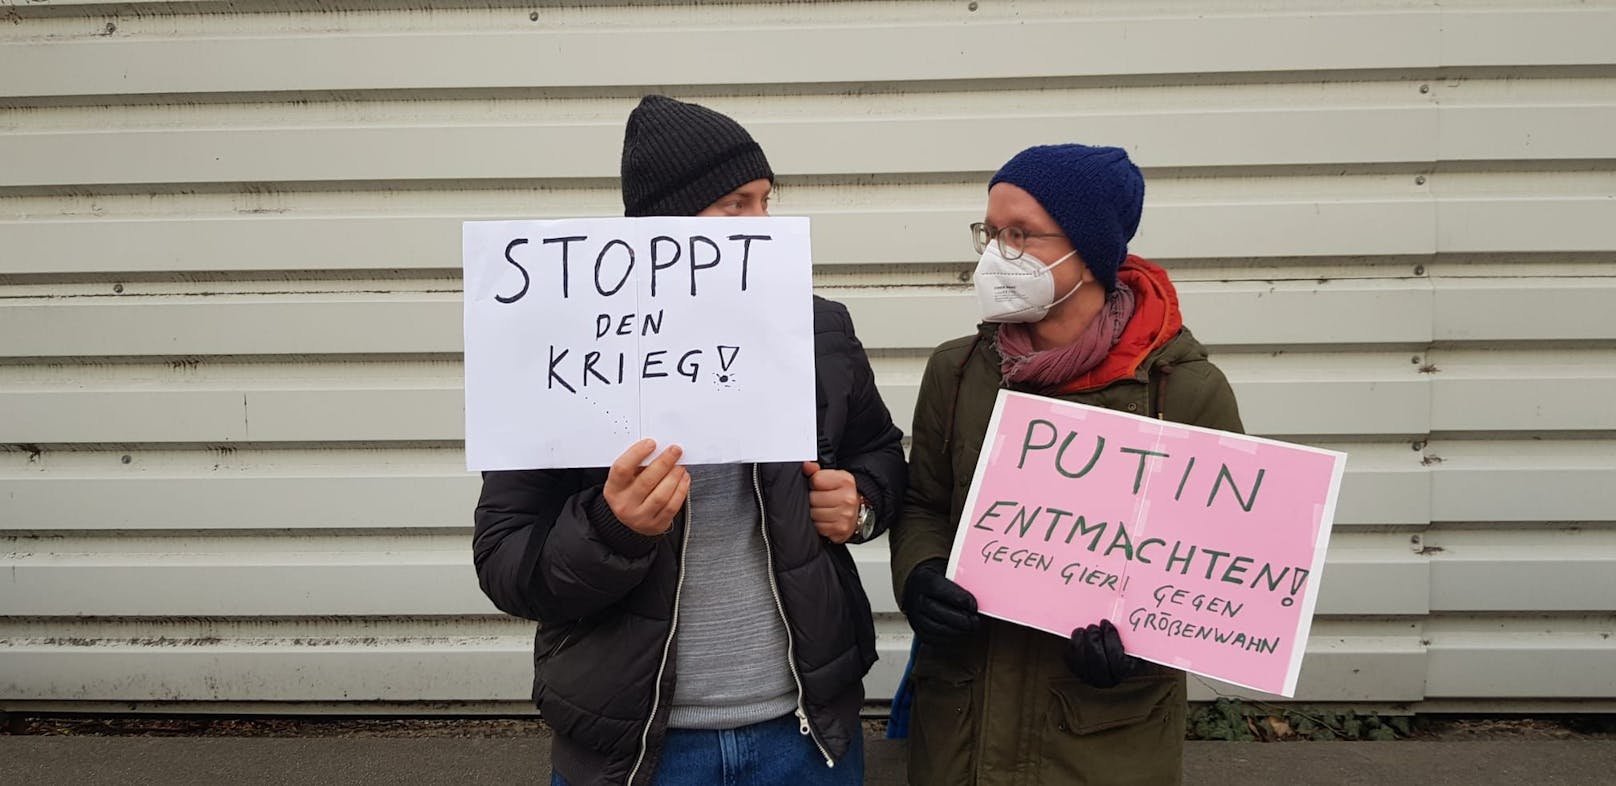 "Stoppt den Krieg!" und "Putin entmachten!" stand auf zwei Demo-Schildern